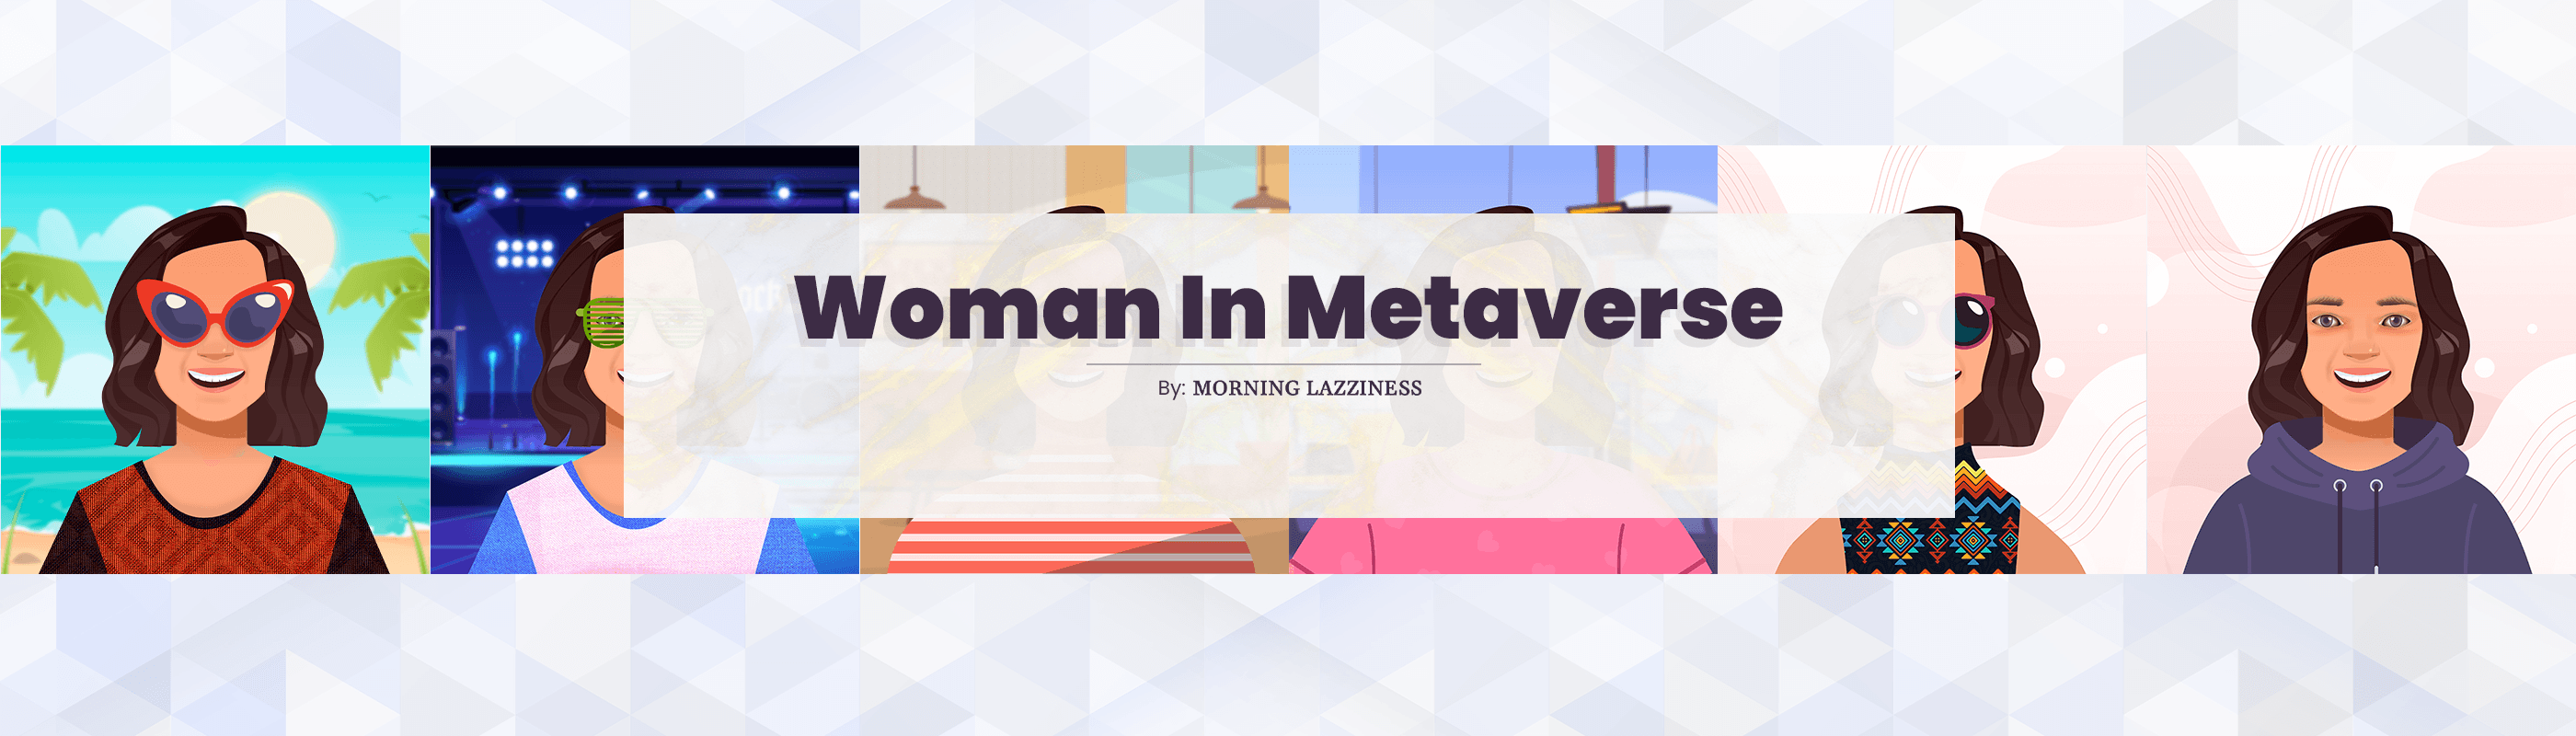 Woman In Metaverse (WiM)